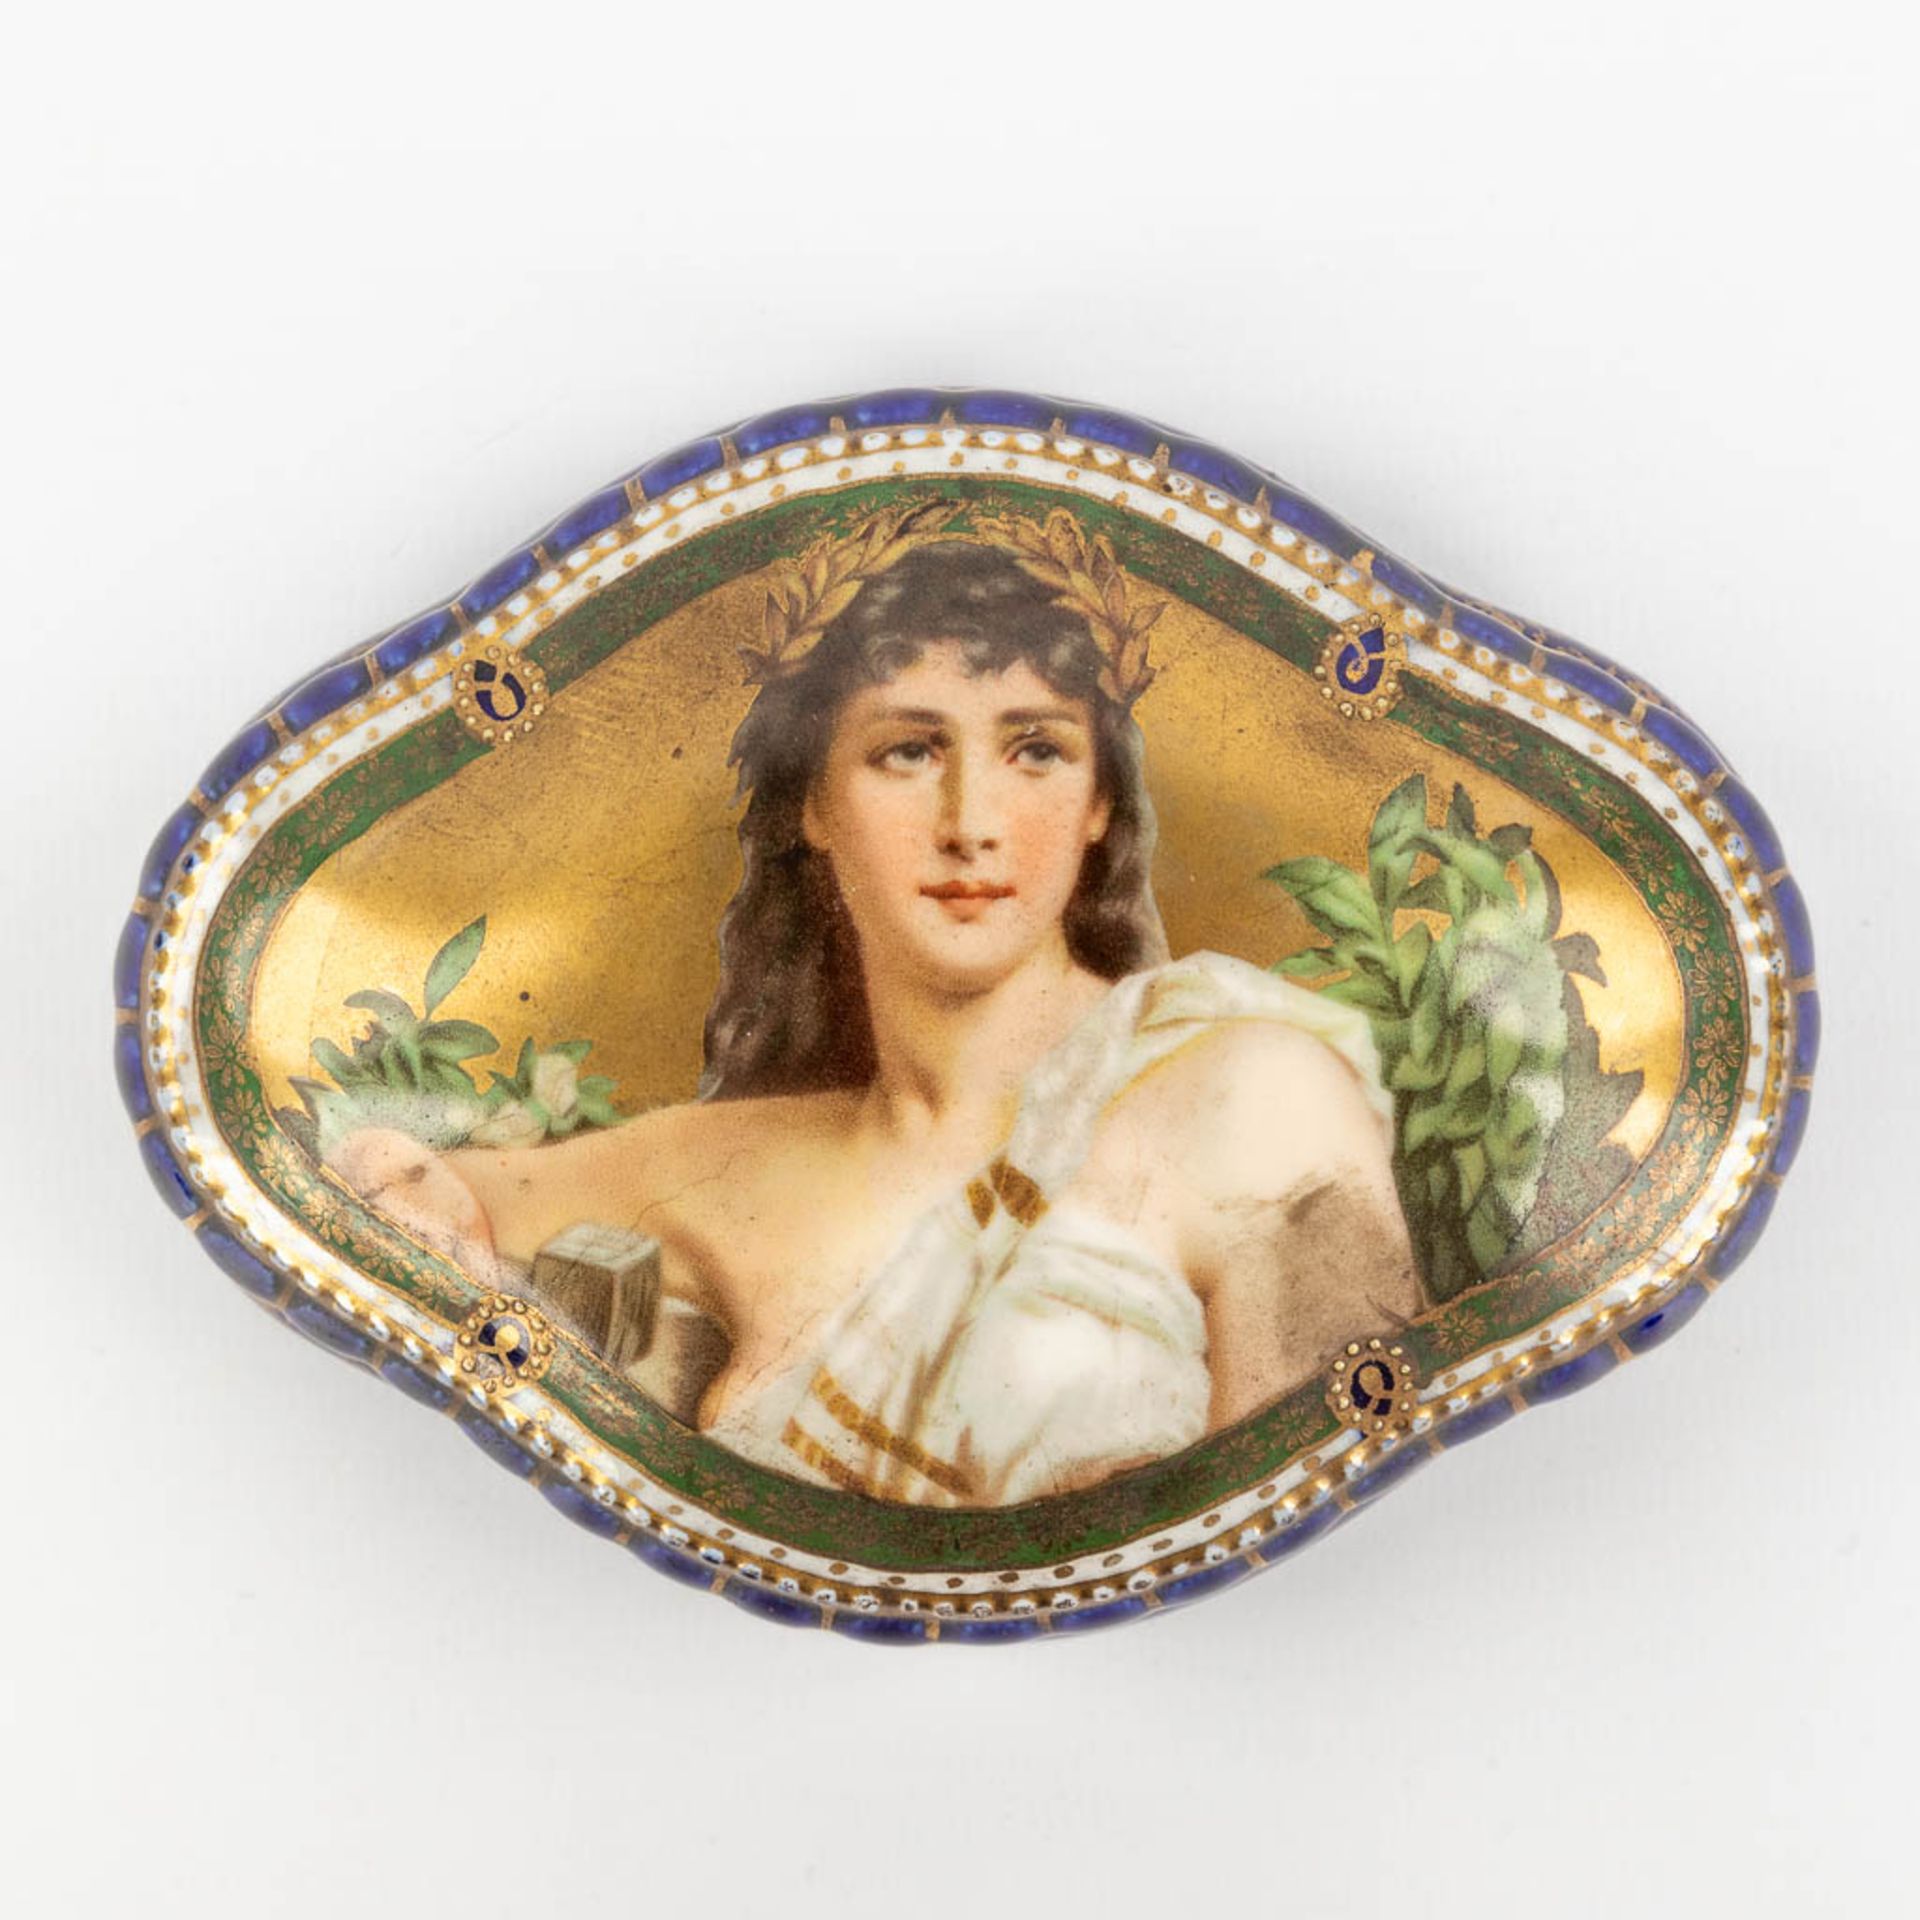 Sitzendorf & 'Royal Vienna' a set of 2 porcelain items. (L:12 x W:20 x H:23 cm) - Image 14 of 22